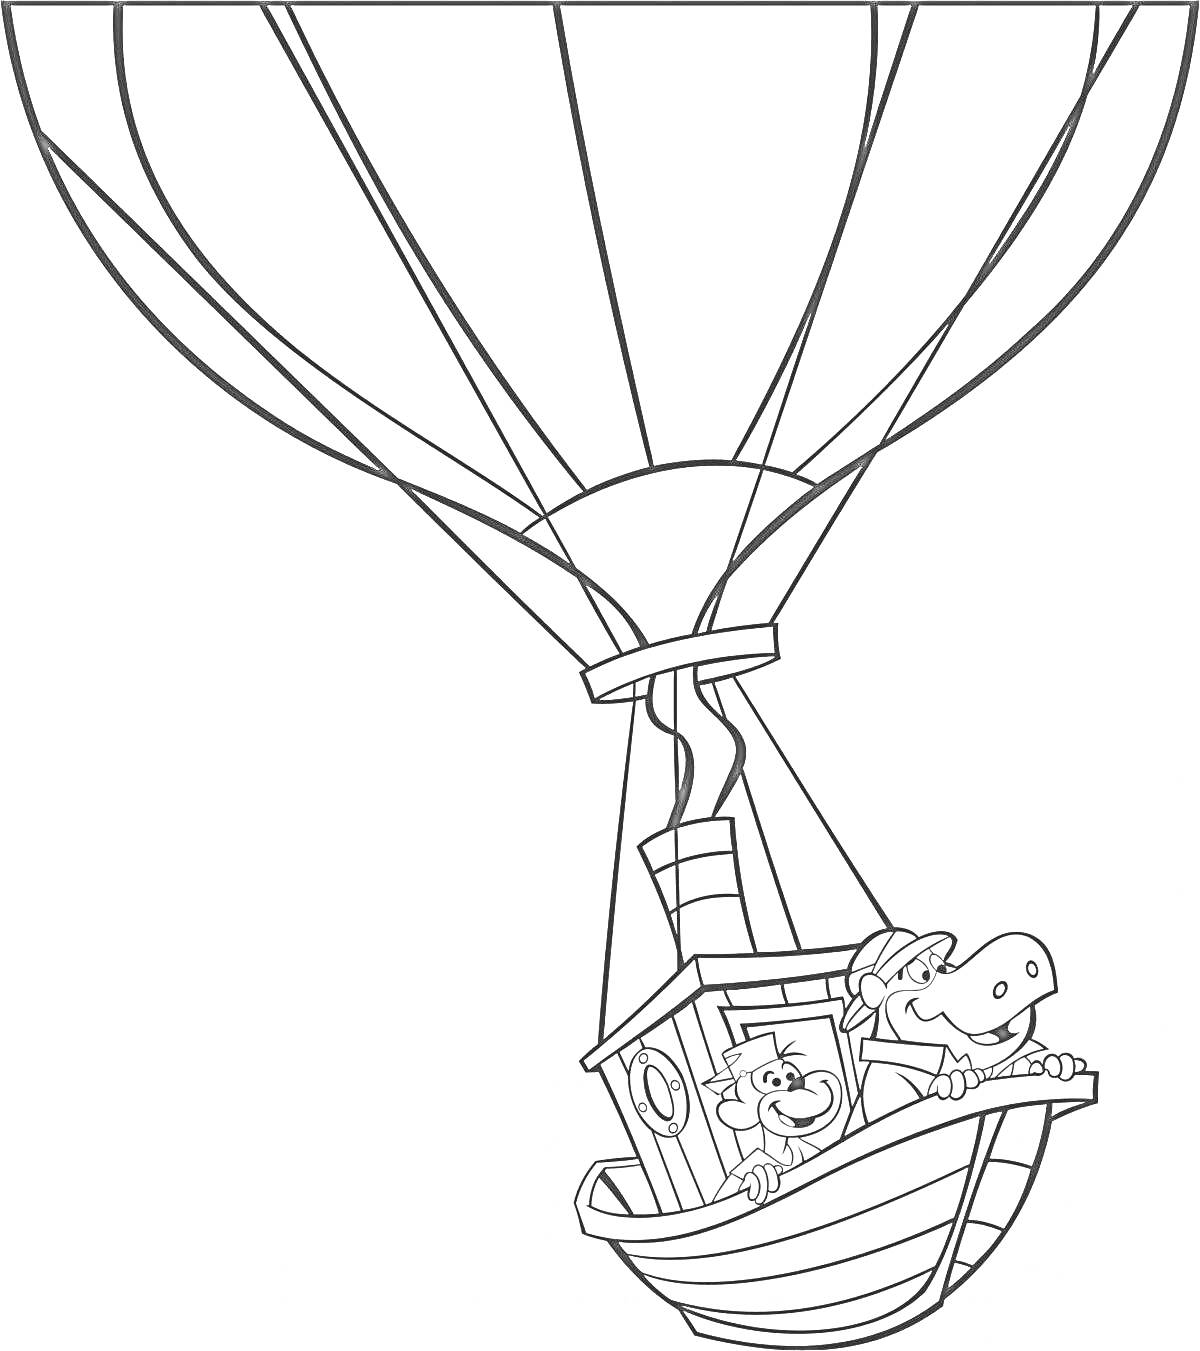 Раскраска воздушный шар с корзиной в виде корабля и собака с человеком внутри